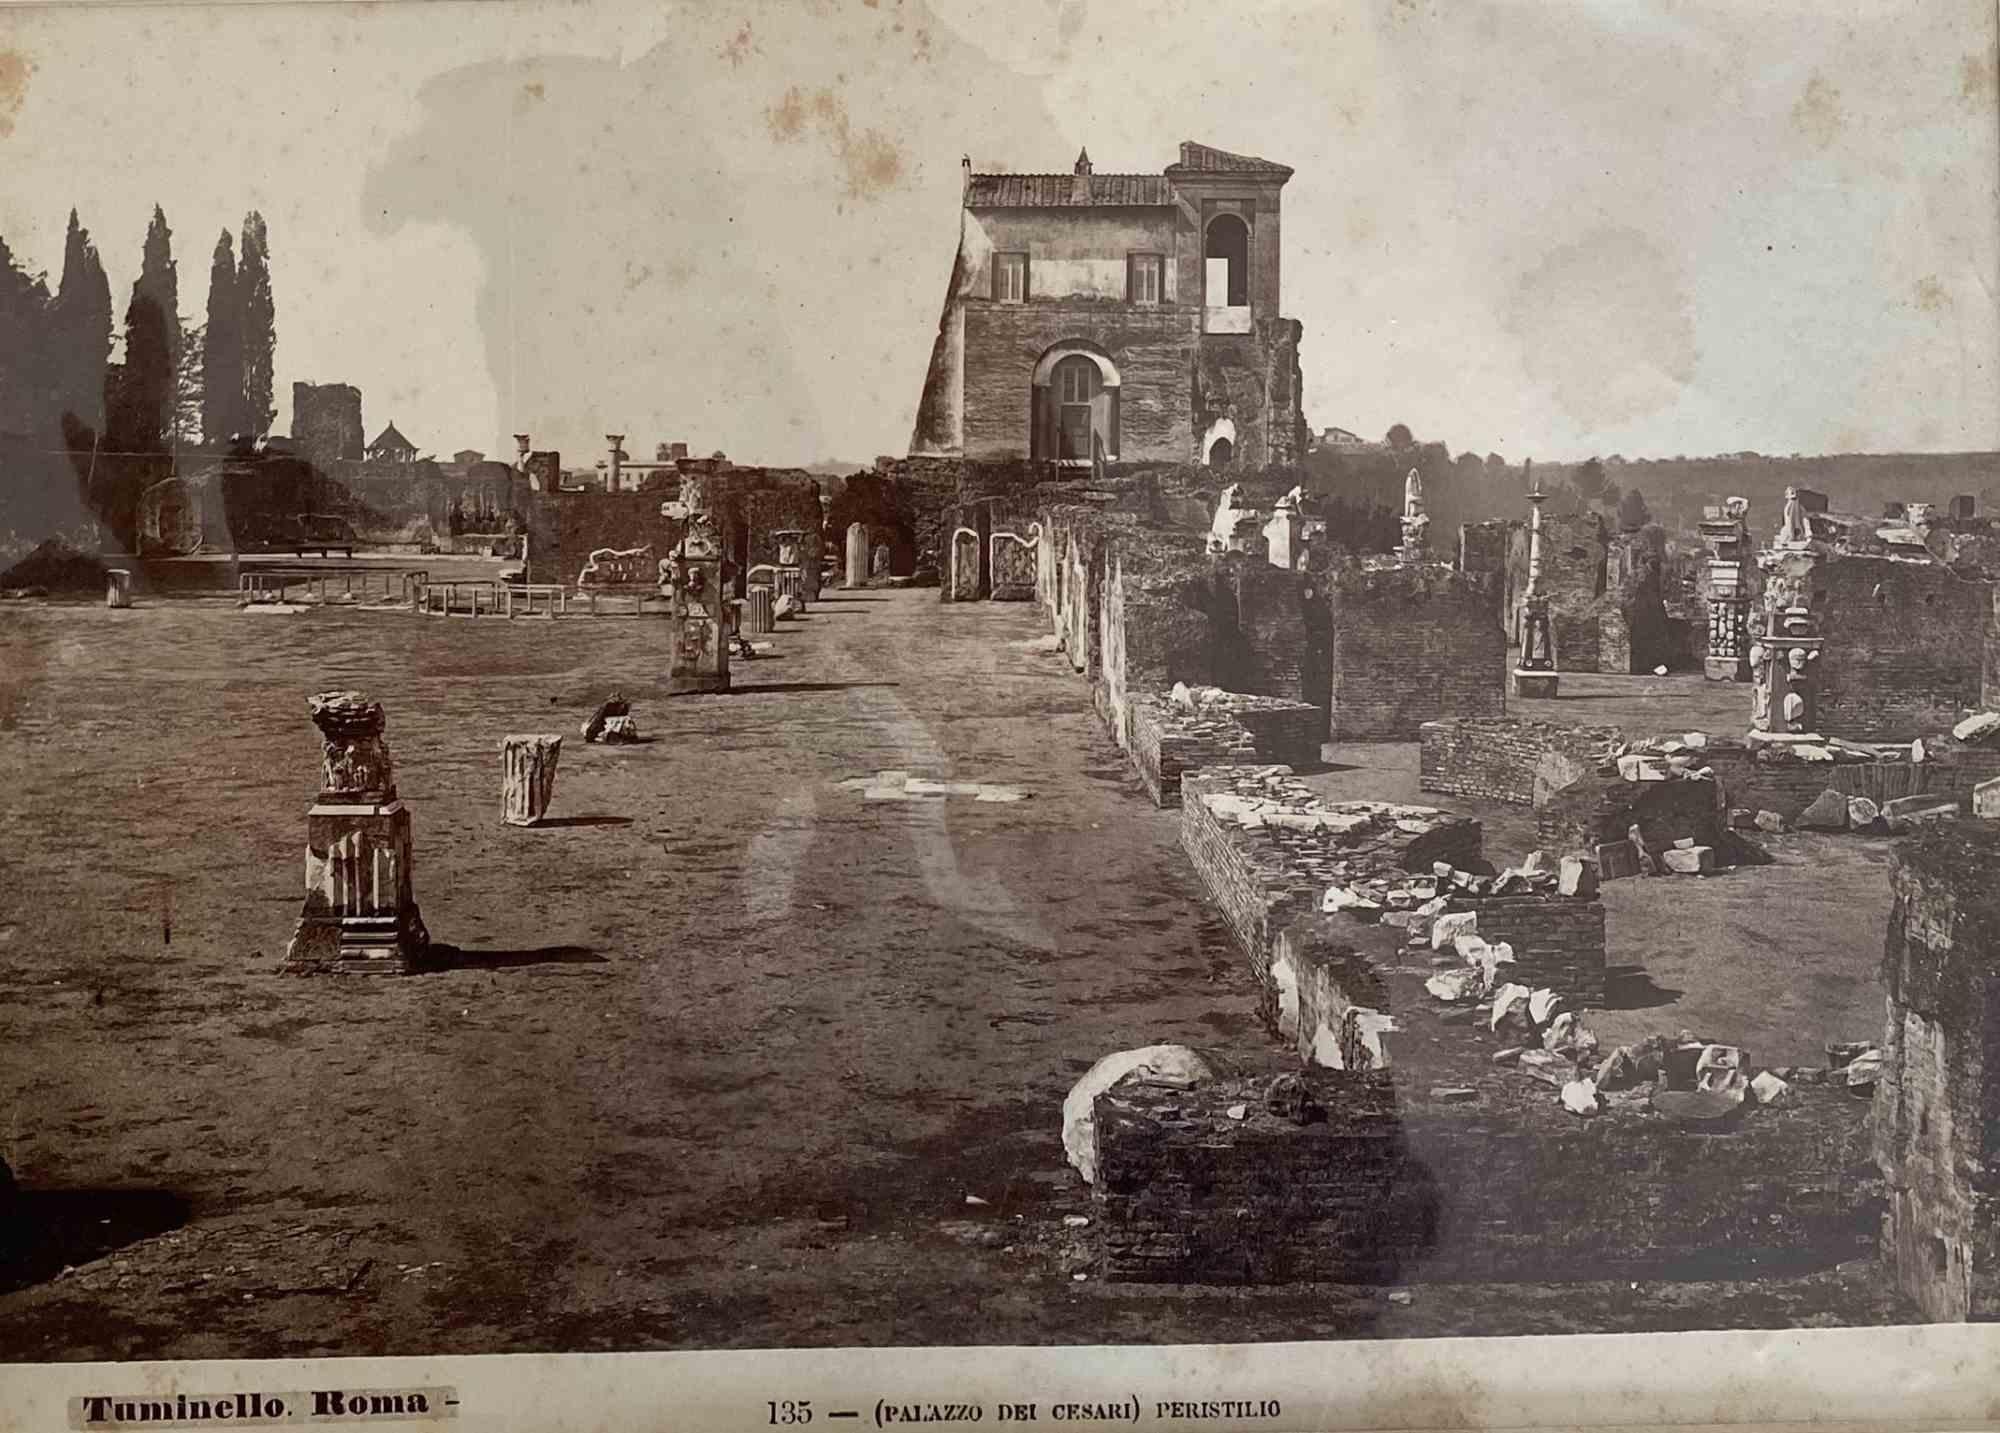 Lodovico Tuminello Landscape Photograph - View of Monuments Of Rome - Original Photograph by L. Tuminello - 19th Century